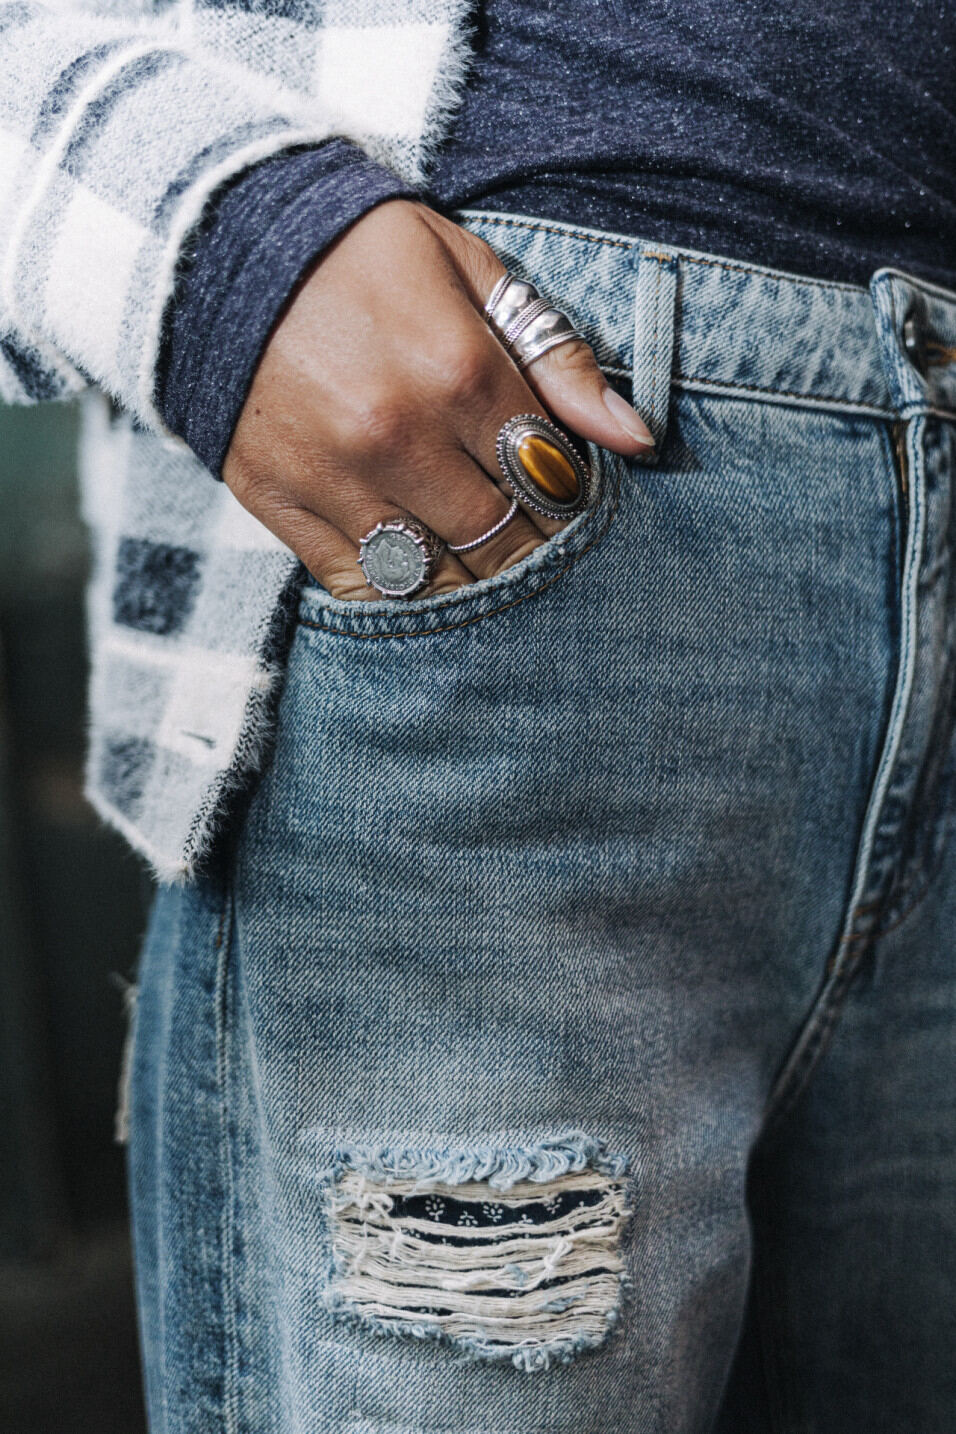 jeans vintage avec des patchs